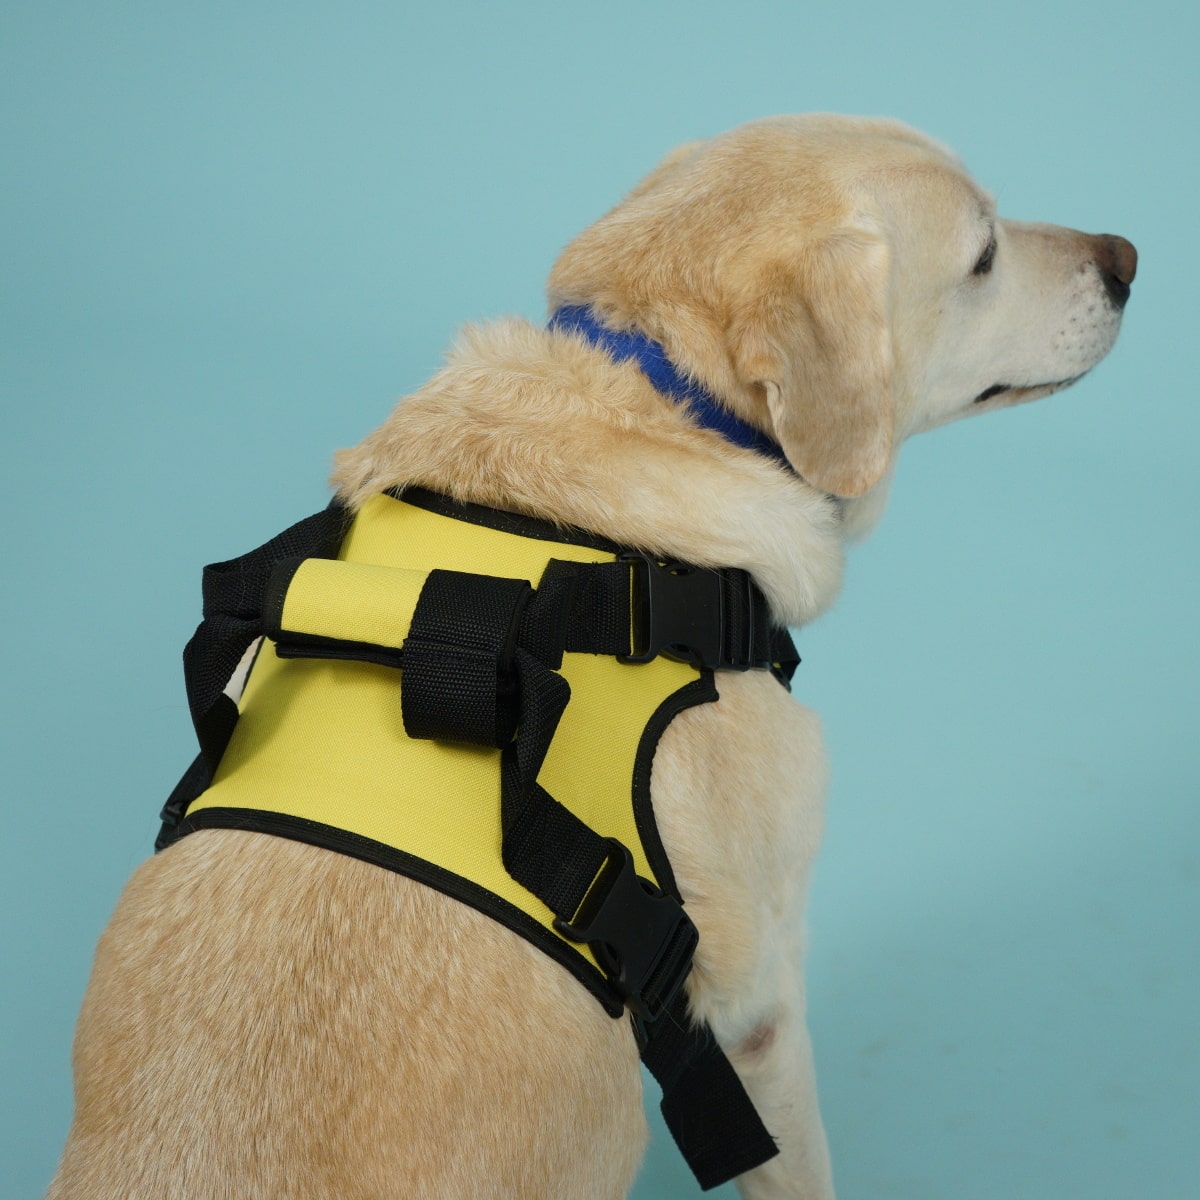 Передняя поддержка для собак ВЕДА-МОДА, желтый, полиэстер, размер M (20-35 кг)